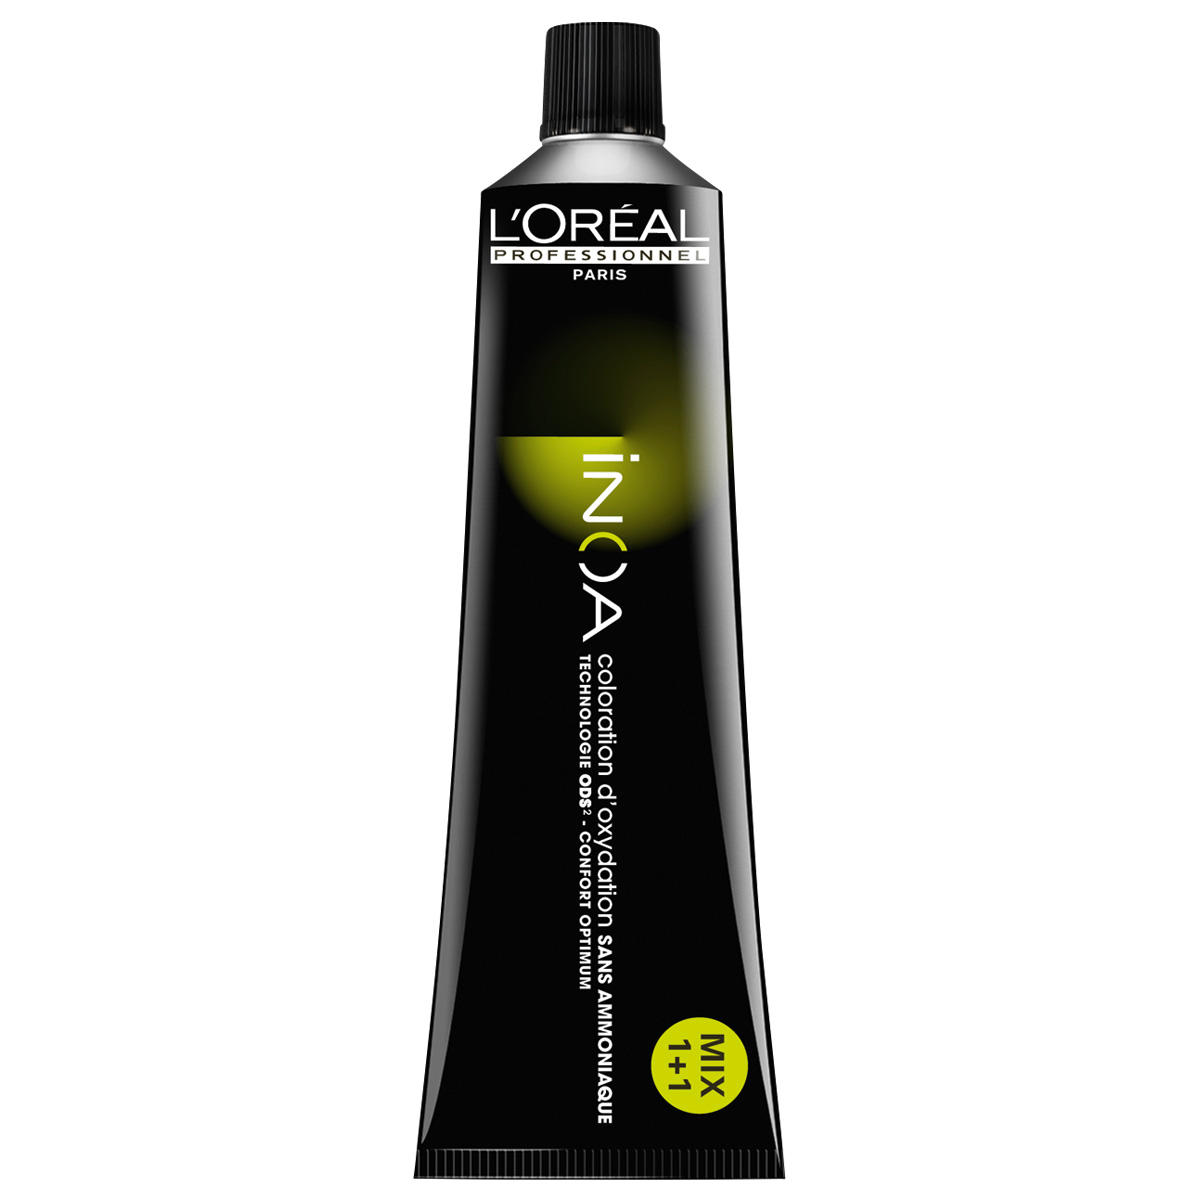 L'Oréal Professionnel Paris Coloration 1 Zwart, tube 60 ml